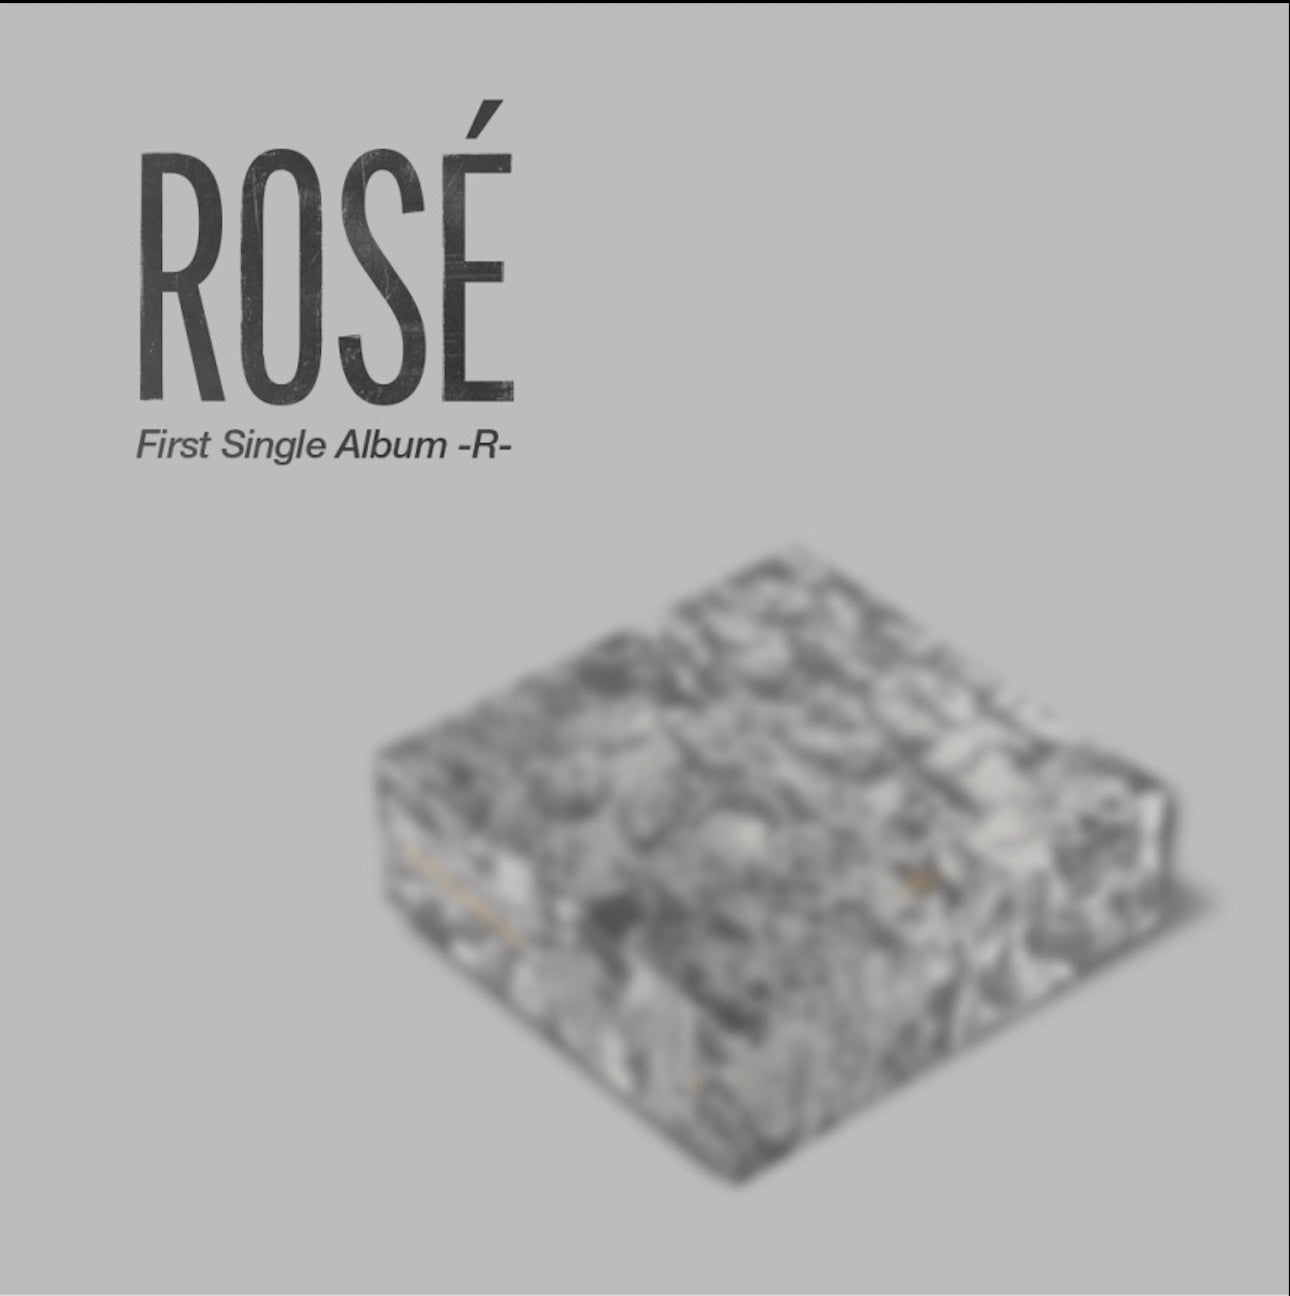 Rose - 1st Single Album - R - (Airkit ver.)